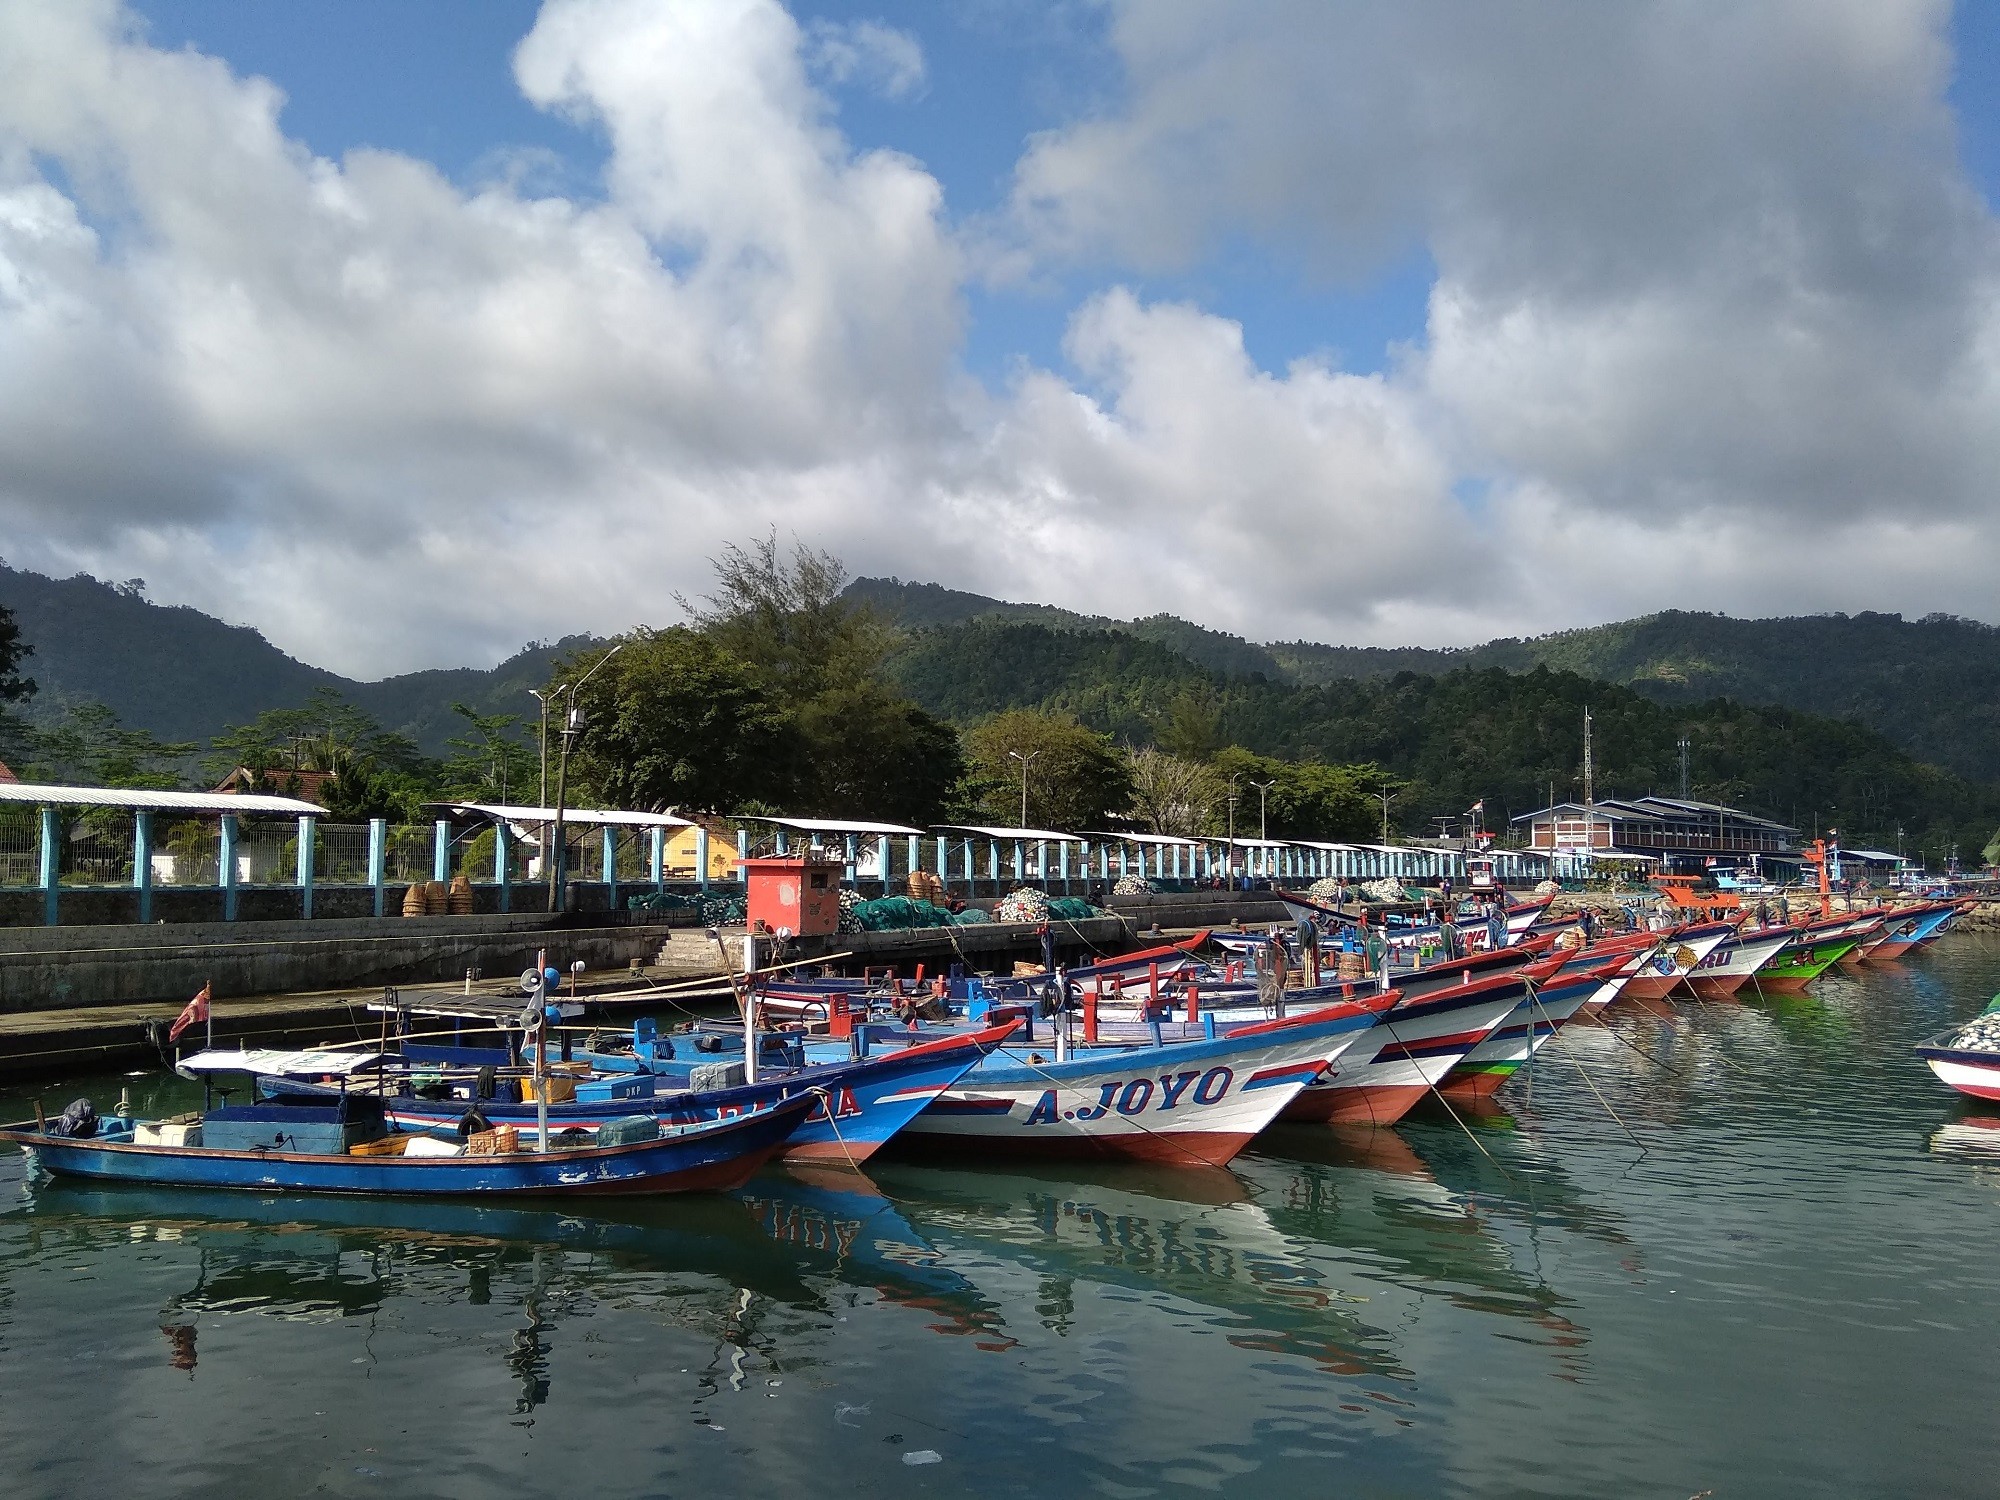 Jajaran Perahu Nelayan di Pantai Prigi